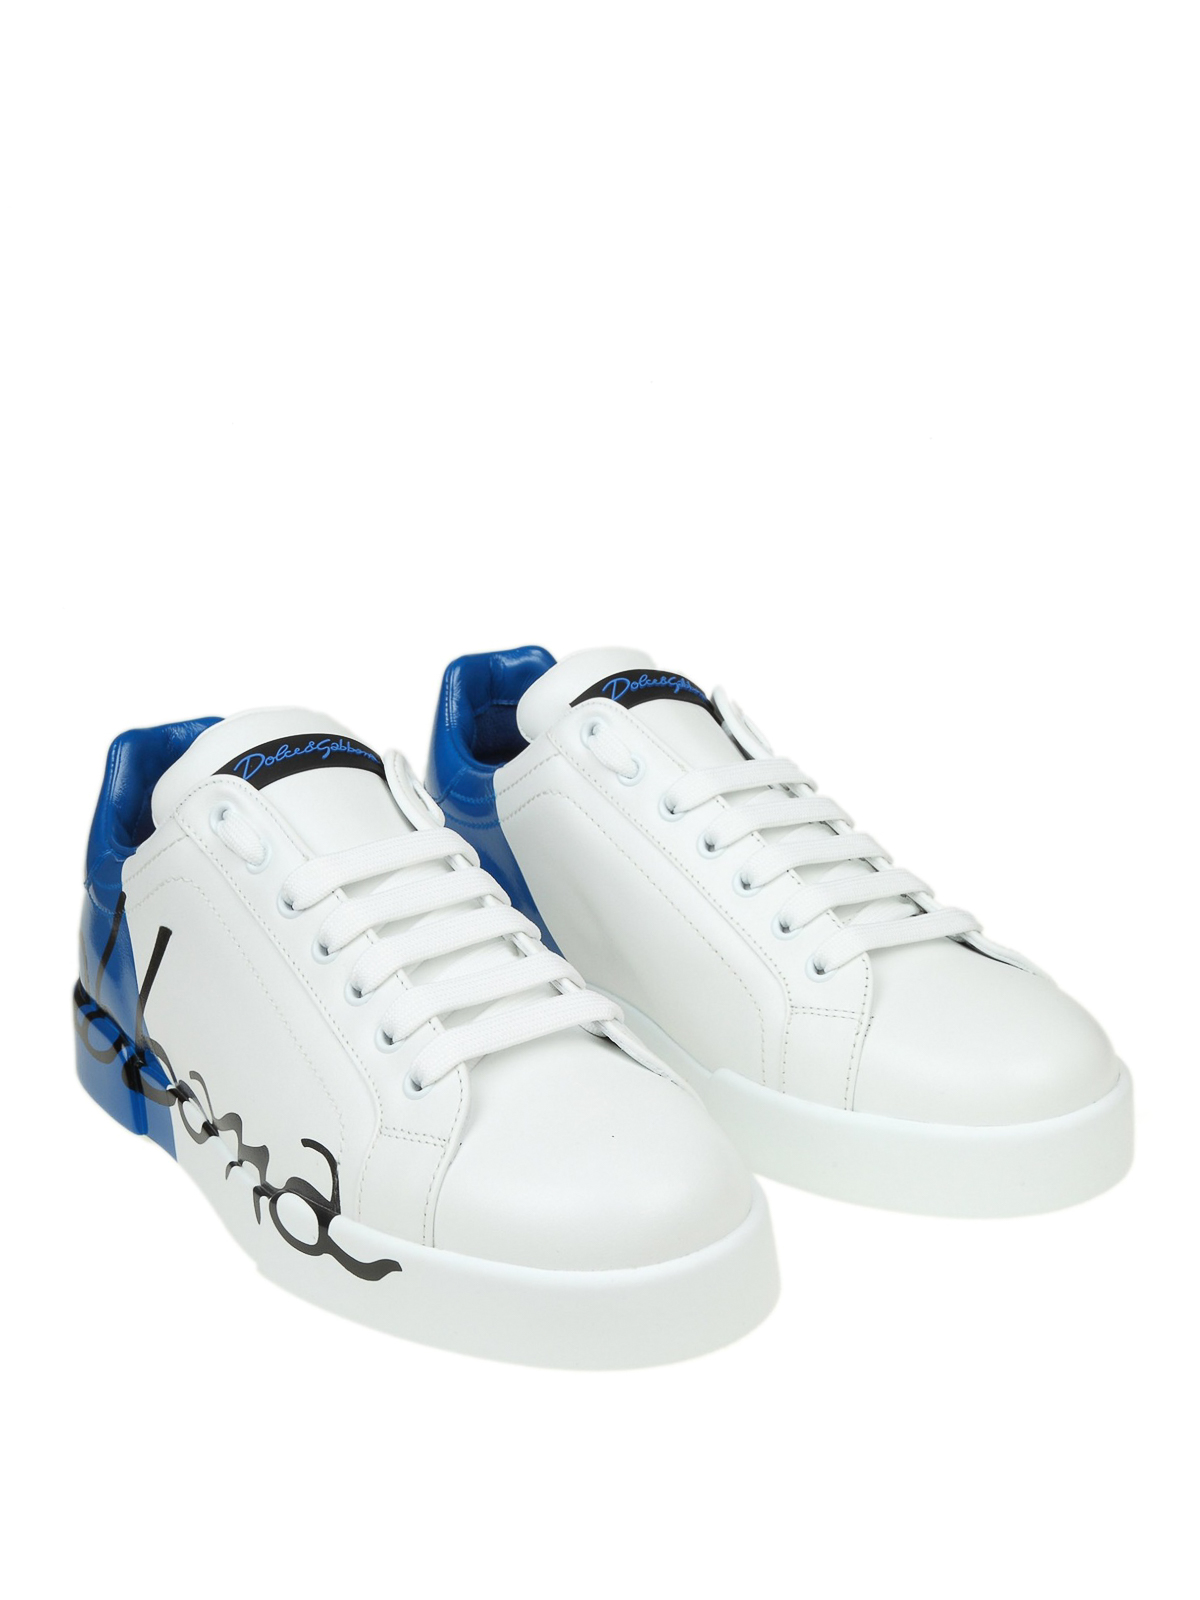 Dolce And Gabbana Light Blue Shoes Slovakia, SAVE 53% -  